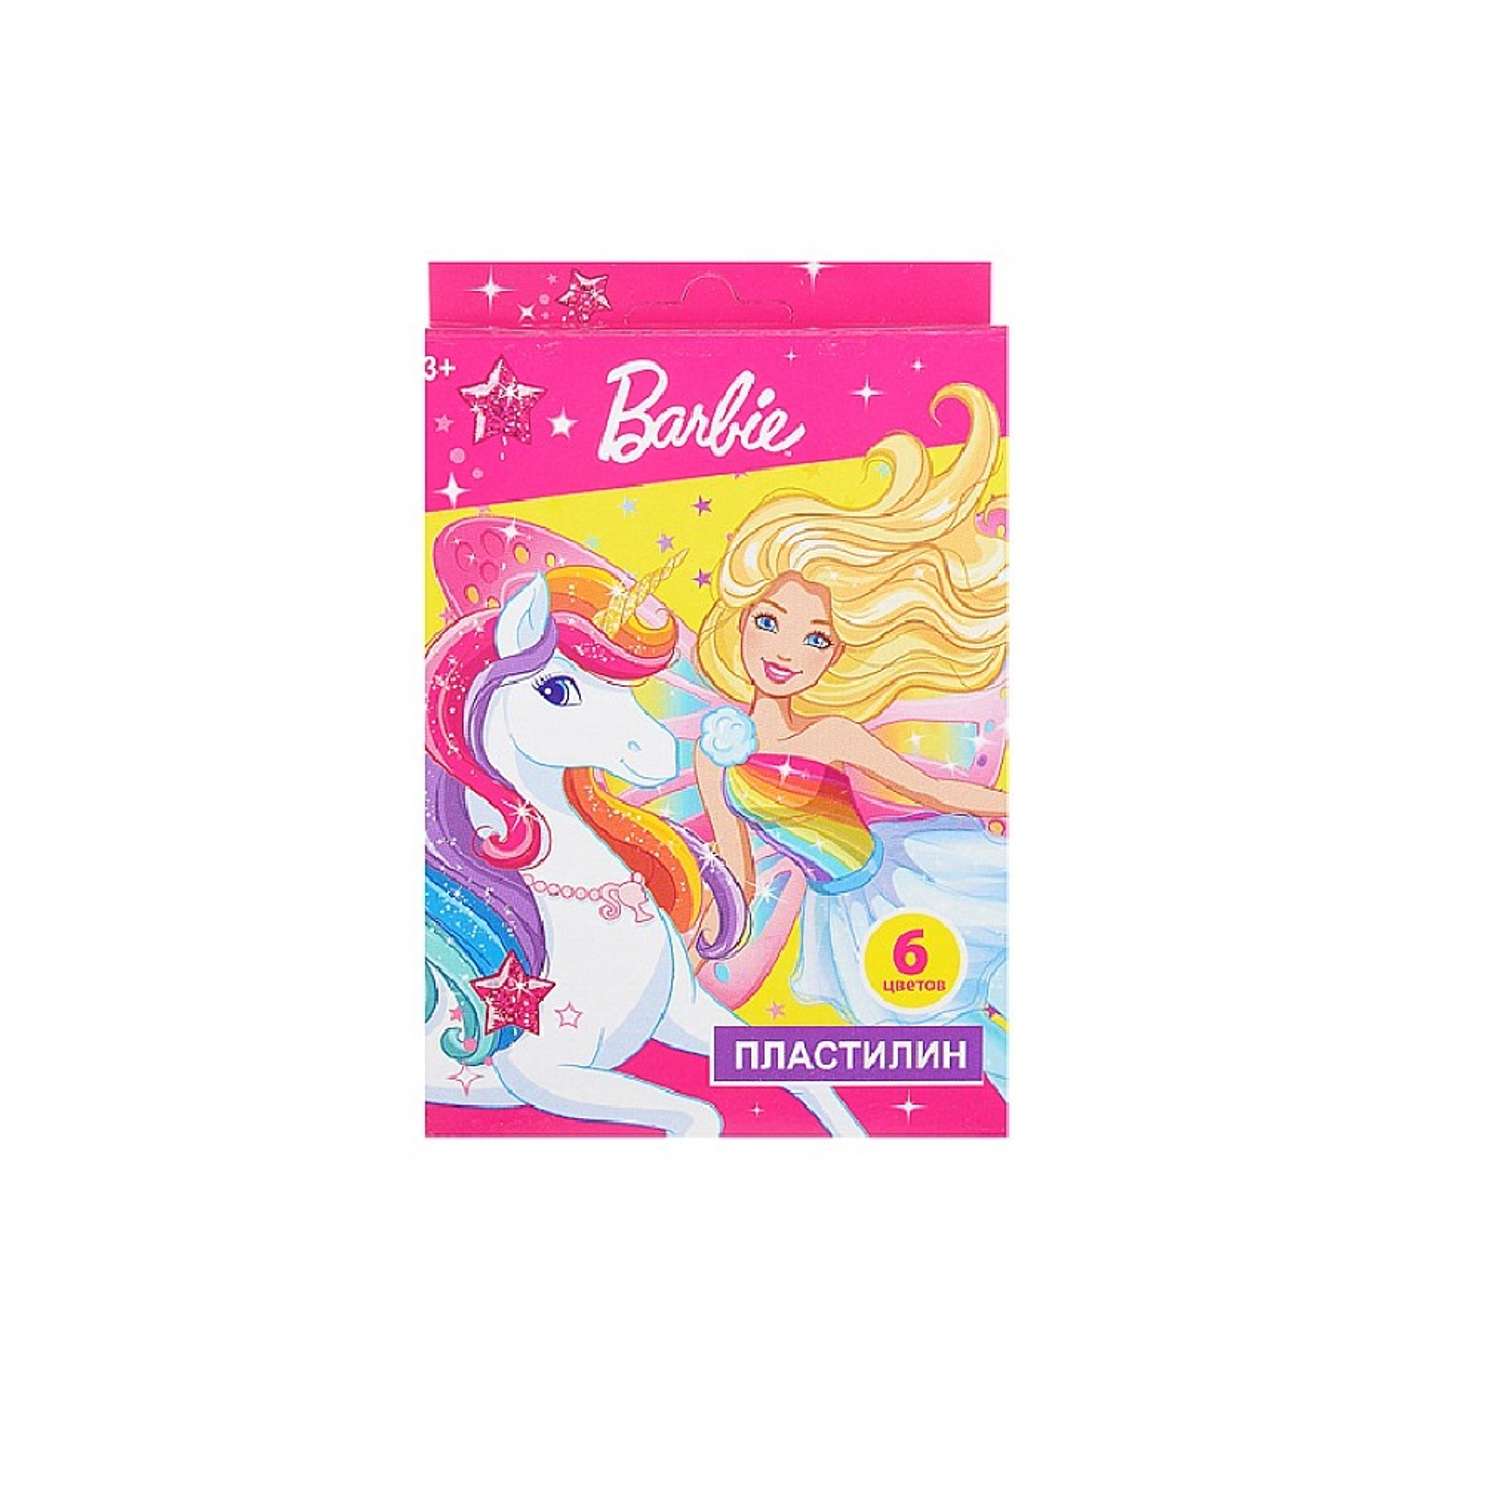 Пластилин Barbie 6 цветов - фото 1